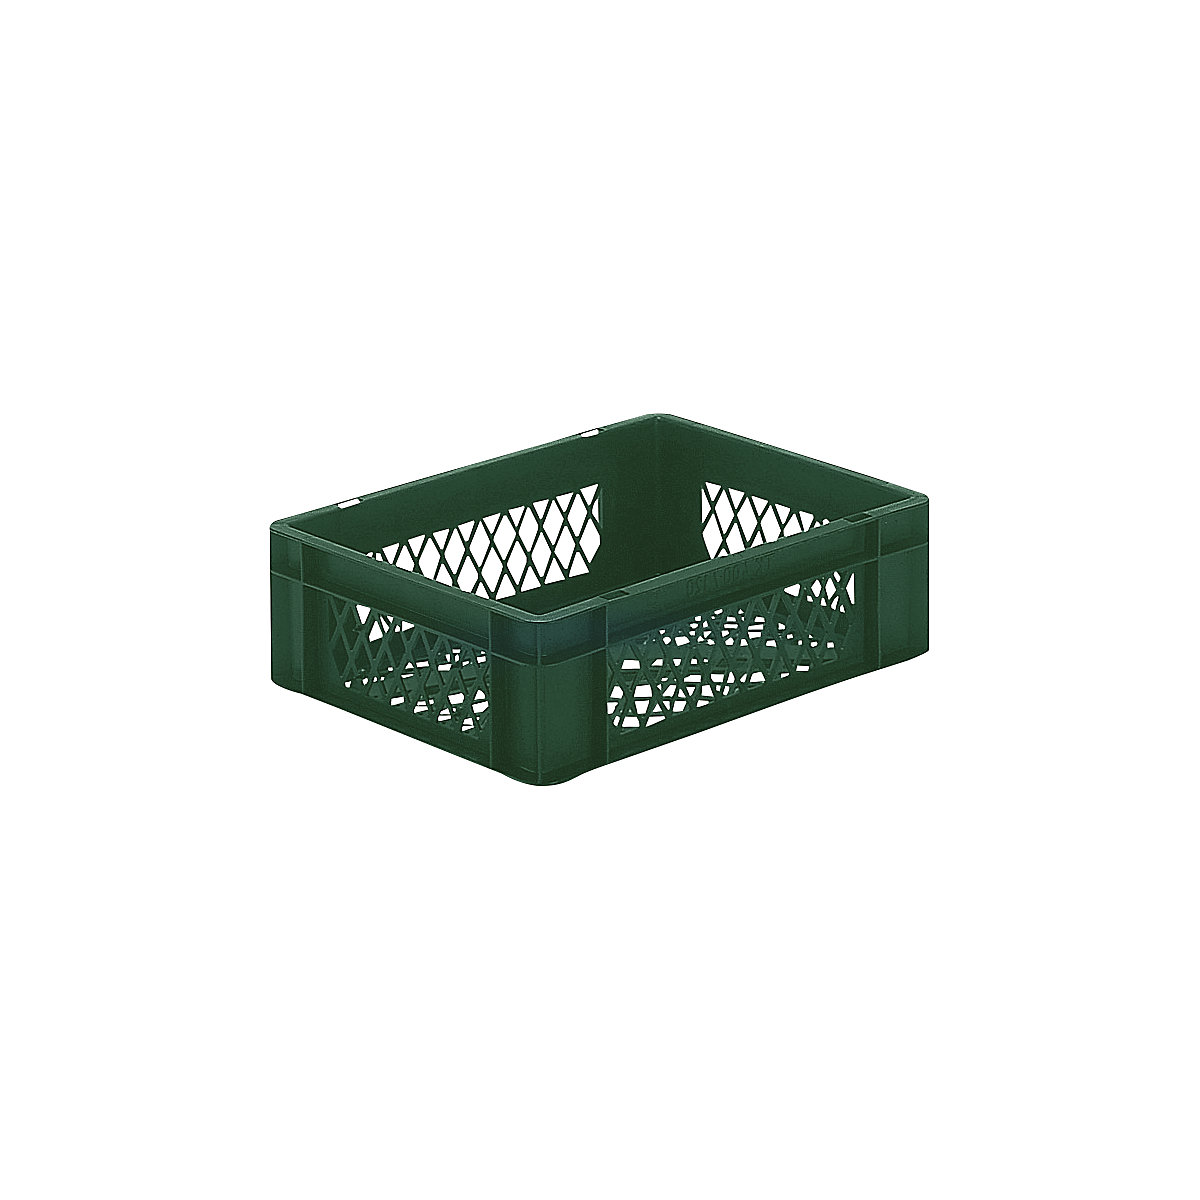 Euro-Format-Stapelbehälter, Wände und Boden durchbrochen, LxBxH 400 x 300 x 120 mm, grün, VE 5 Stk-5